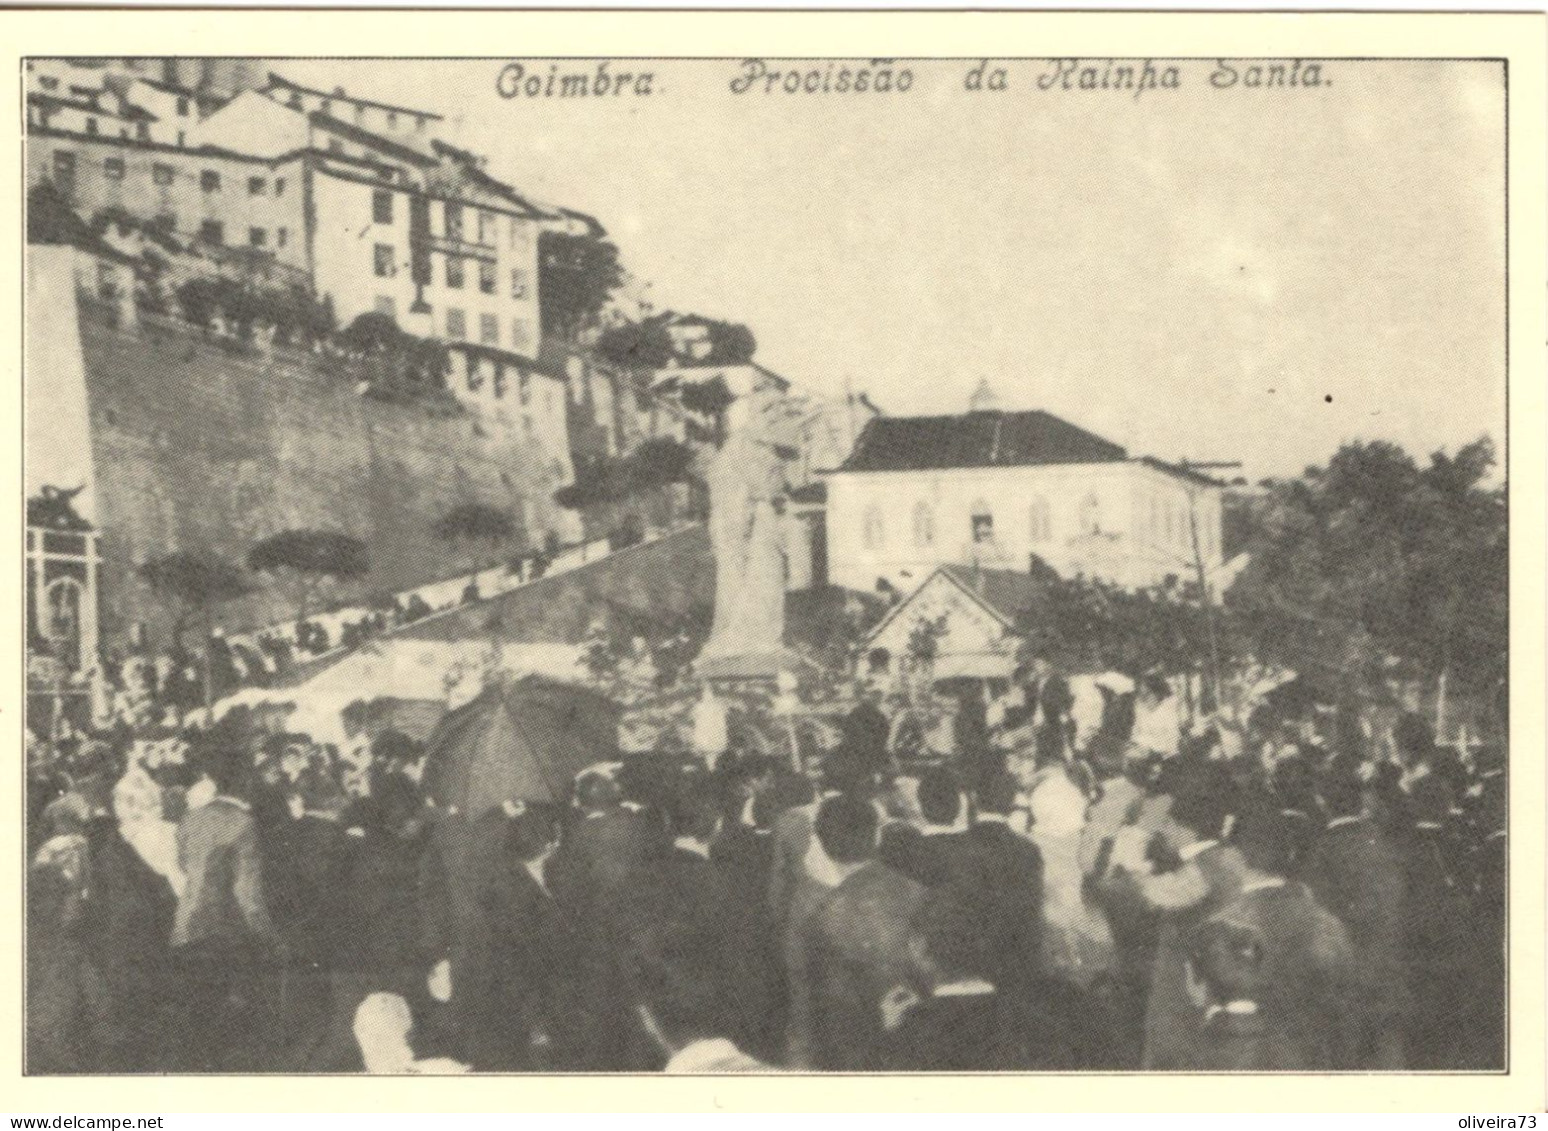 COIMBRA No Antigamente - Procissão Da Rainha Santa - PORTUGAL - Coimbra